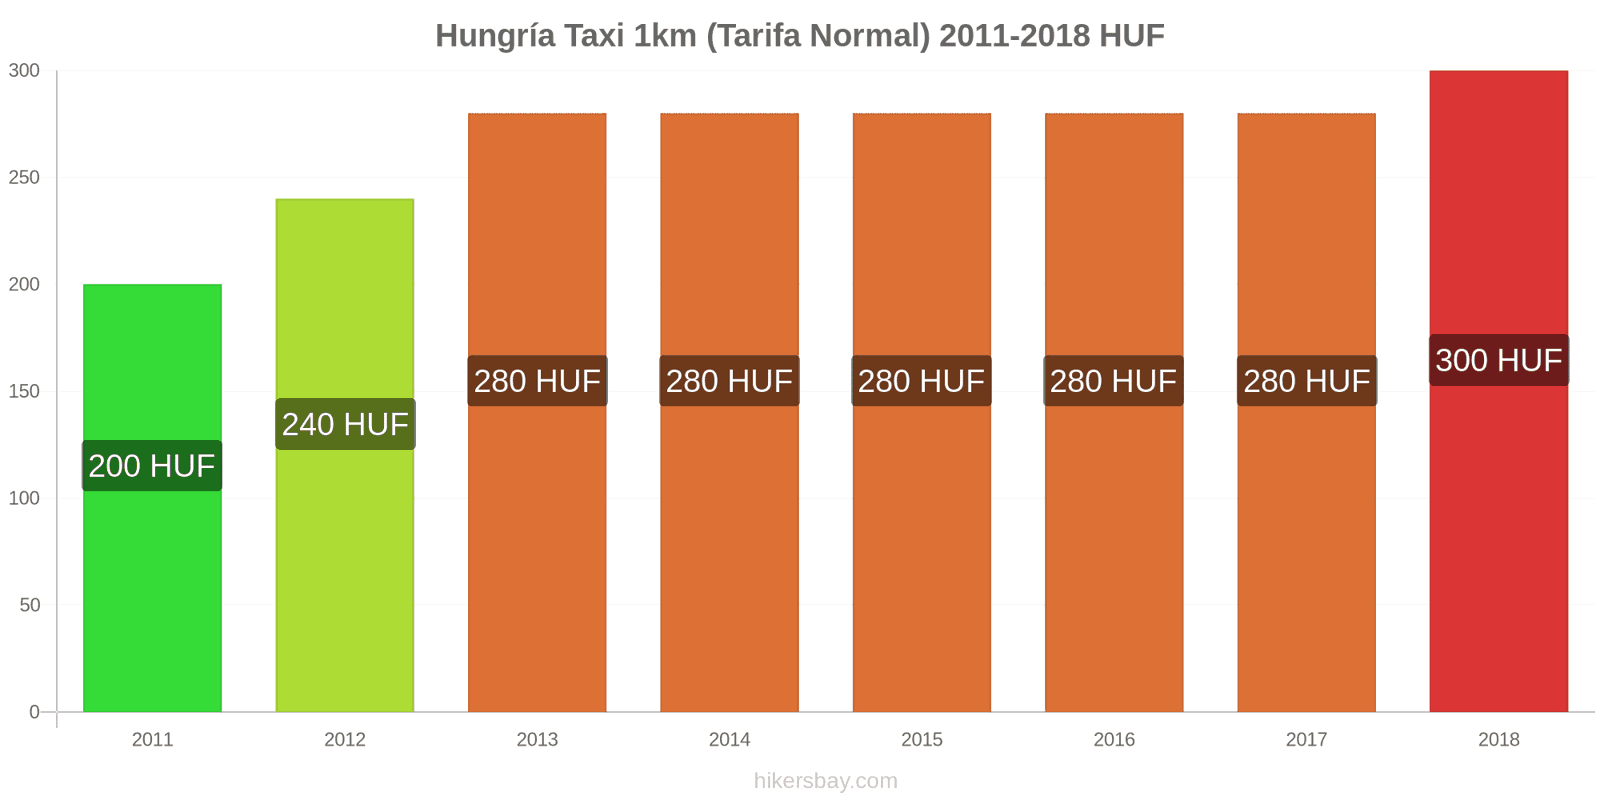 Hungría cambios de precios Taxi 1km (tarifa normal) hikersbay.com